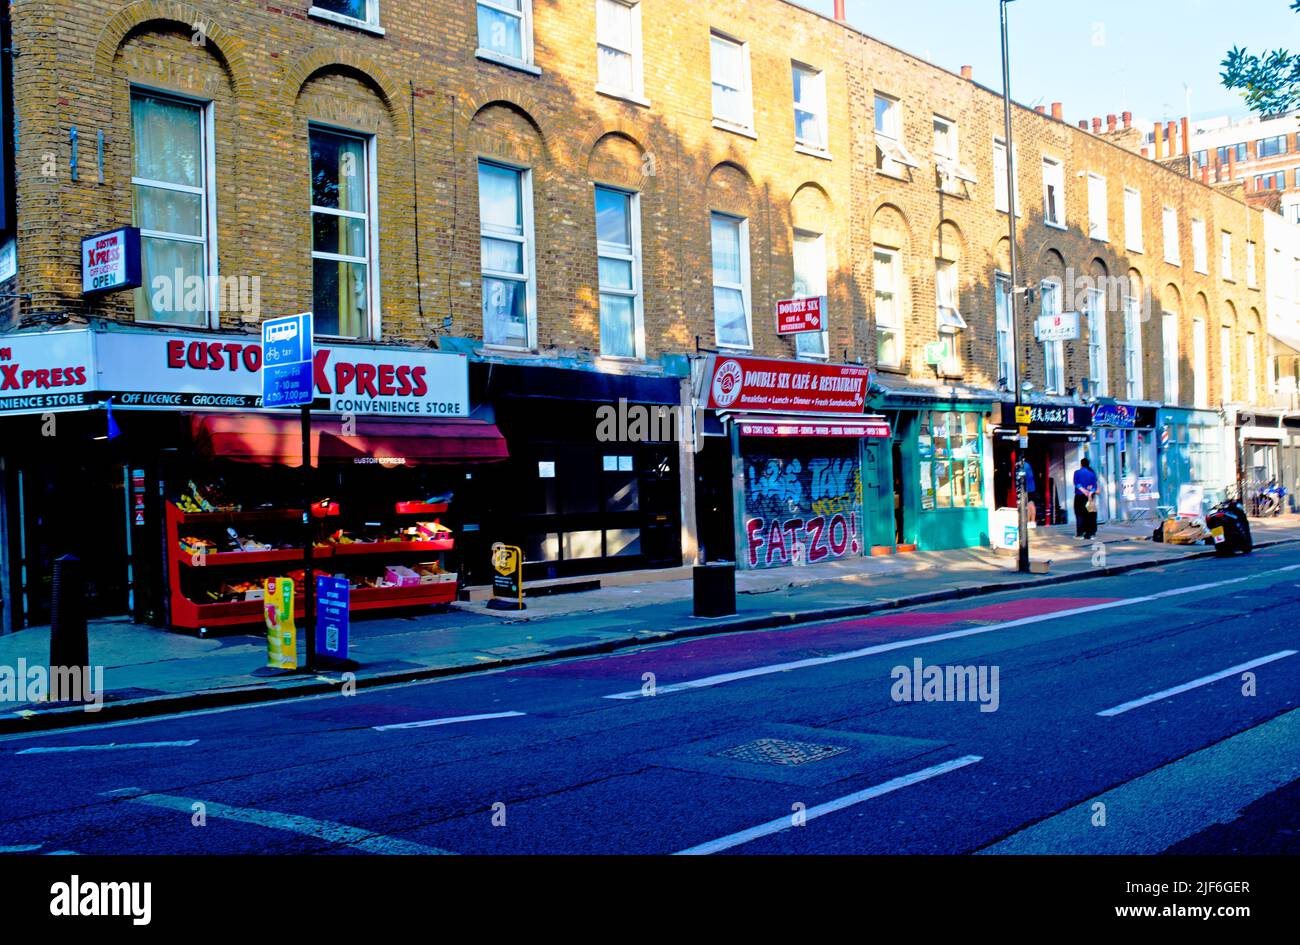 Shops and Takeaways, Euston Road, London, England Stock Photo